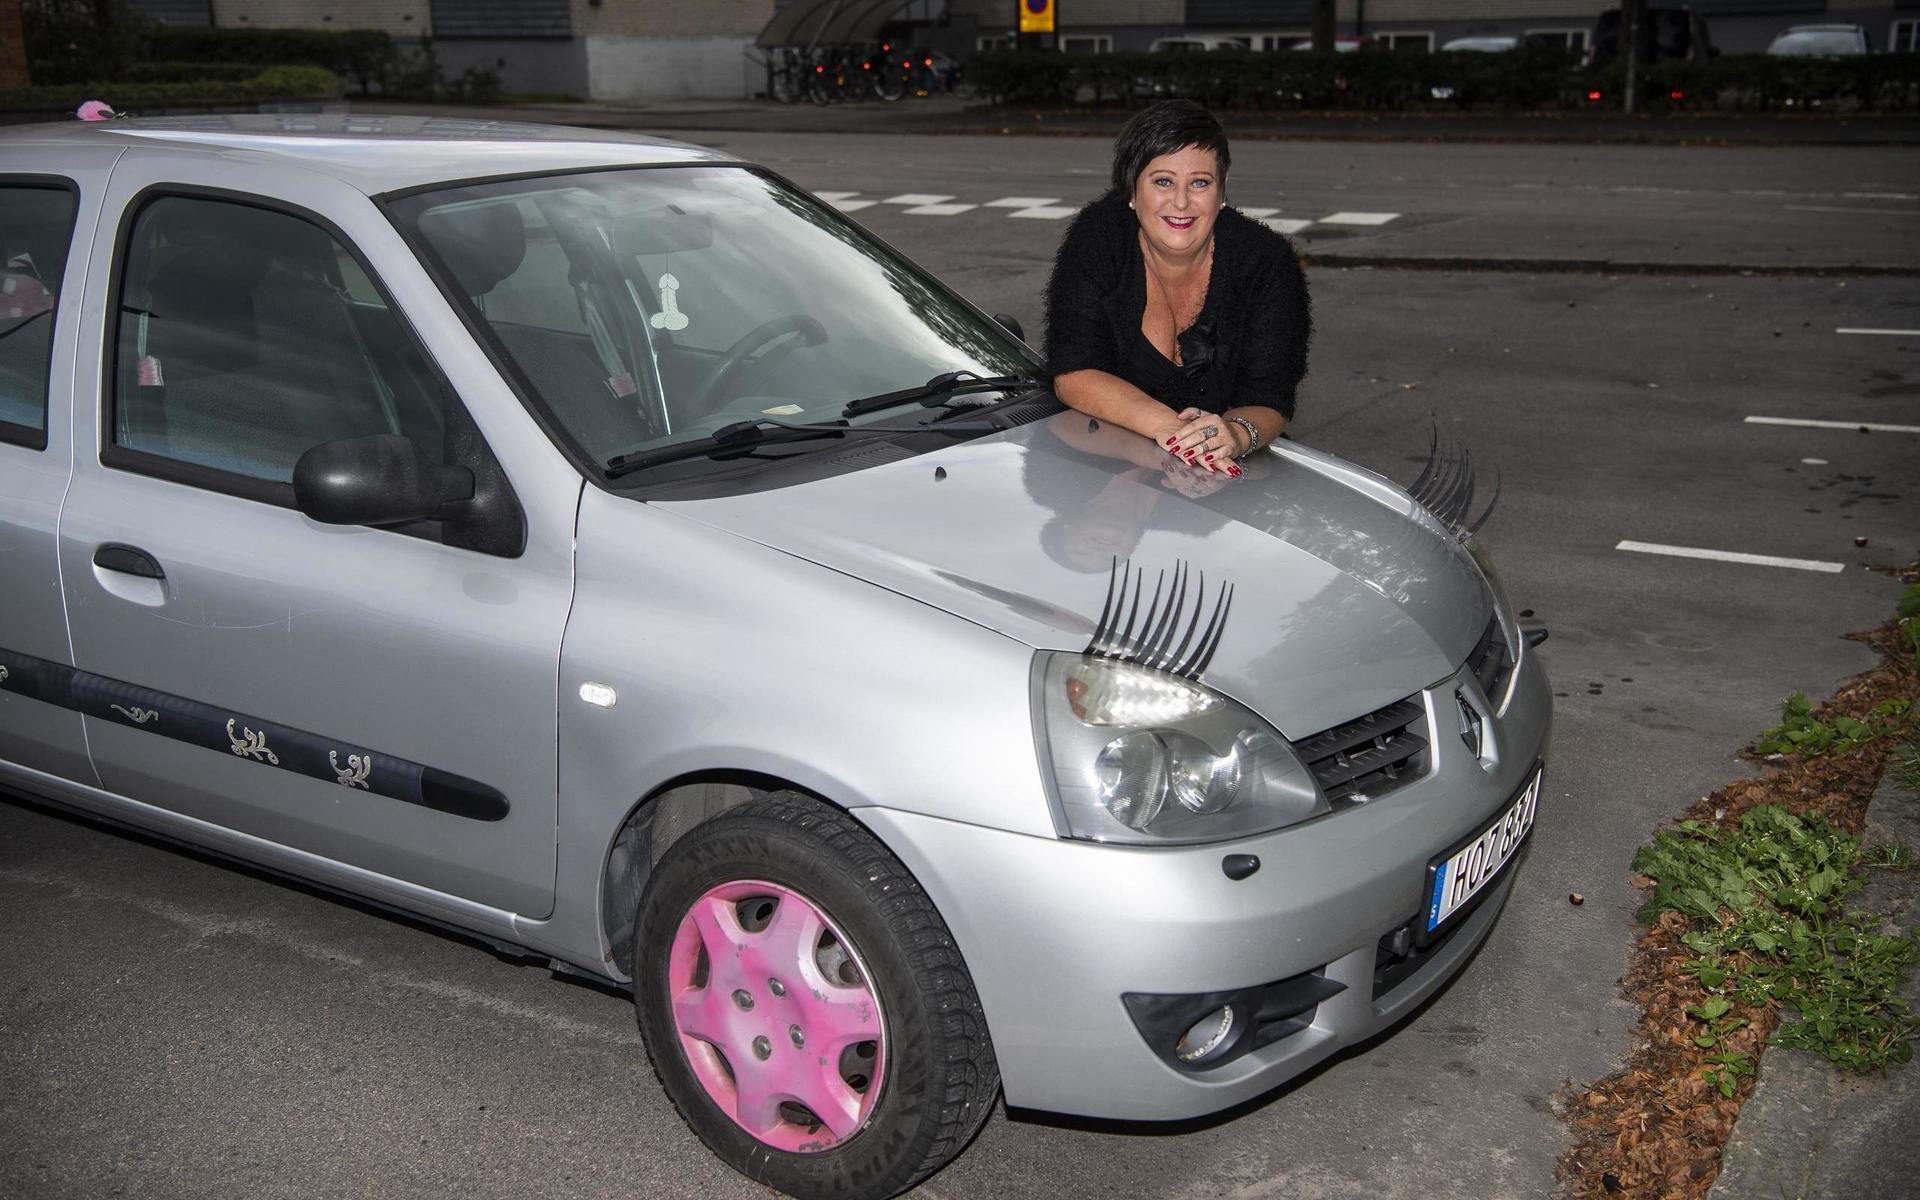 Vad är väl en bil utan lite personlighet? Tanten kör med extrautrustning som ögonfransar och rosa navkapslar.